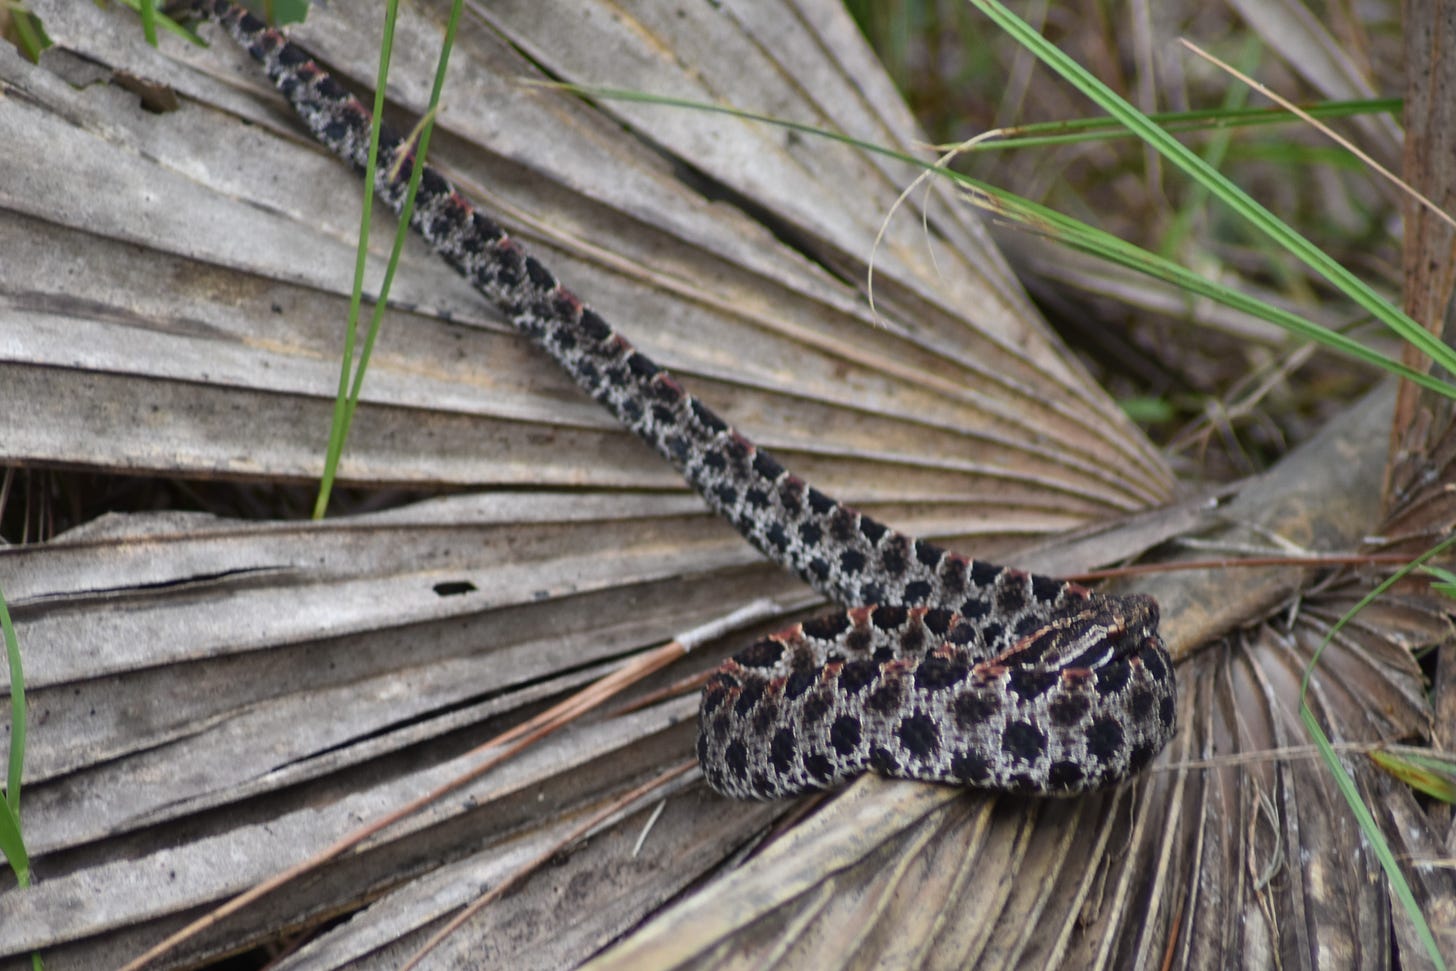 Dusky Pygmy Rattlesnake on Palm Frond